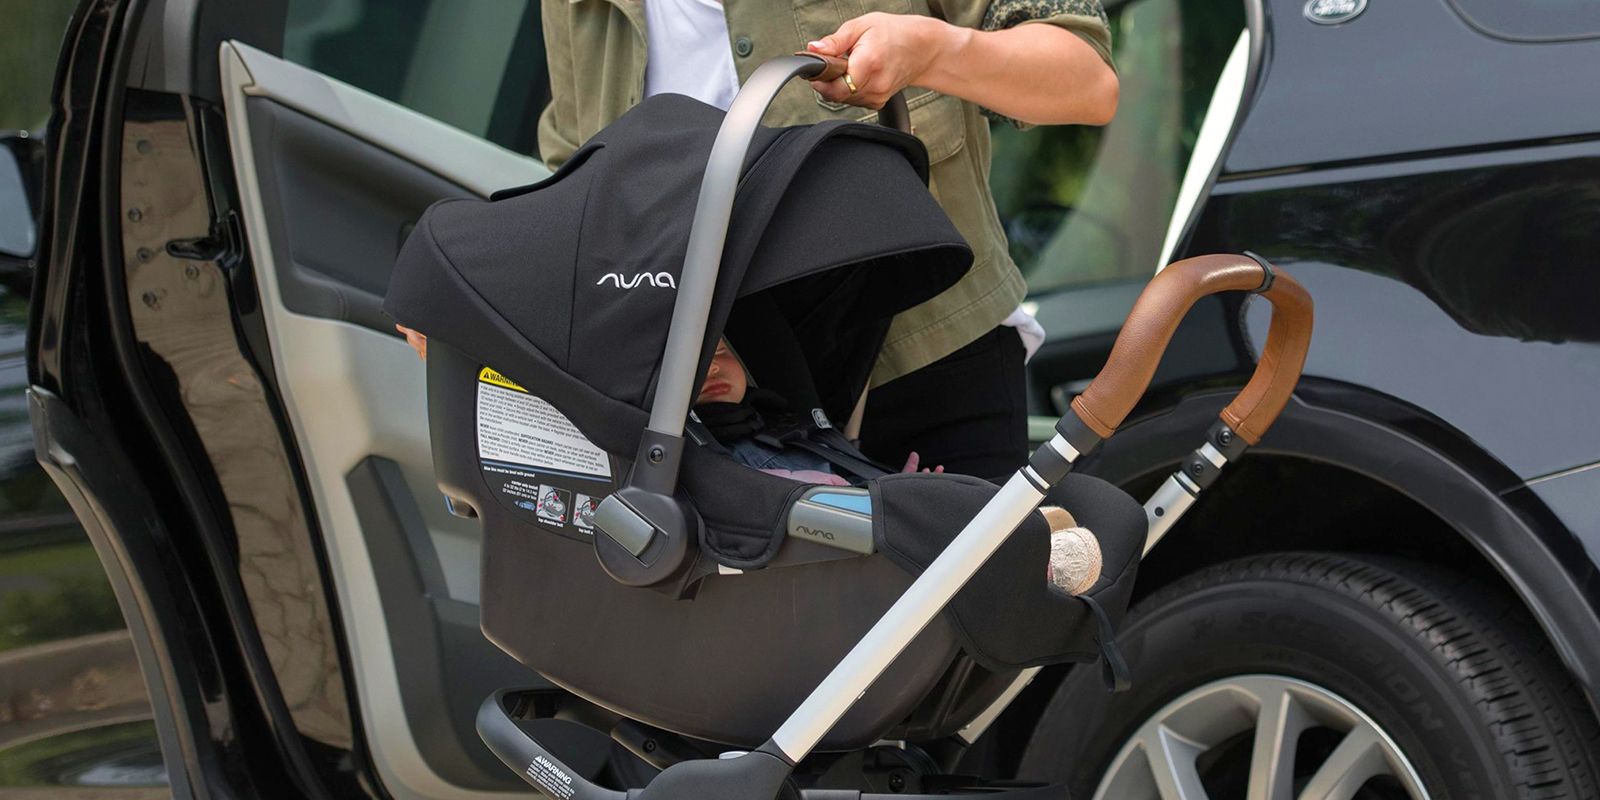 best infant car seat